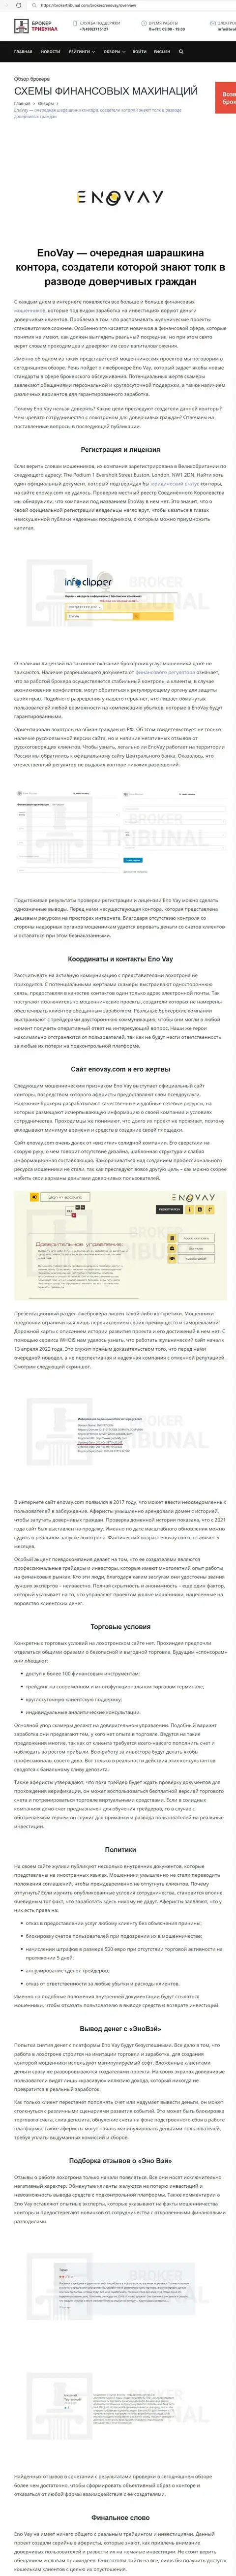 ВЗАИМОДЕЙСТВОВАТЬ НЕ СТОИТ - публикация с обзором мошеннических уловок EnoVay